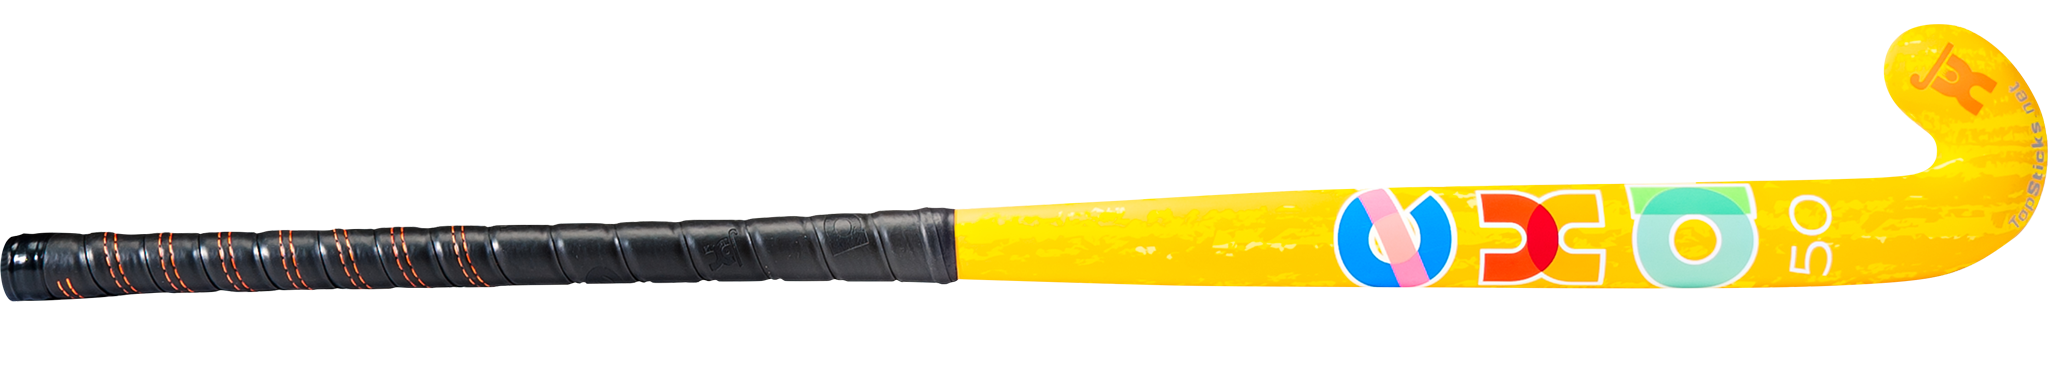 Exa 50 Mid Bow Yellow Field Hockey Stick